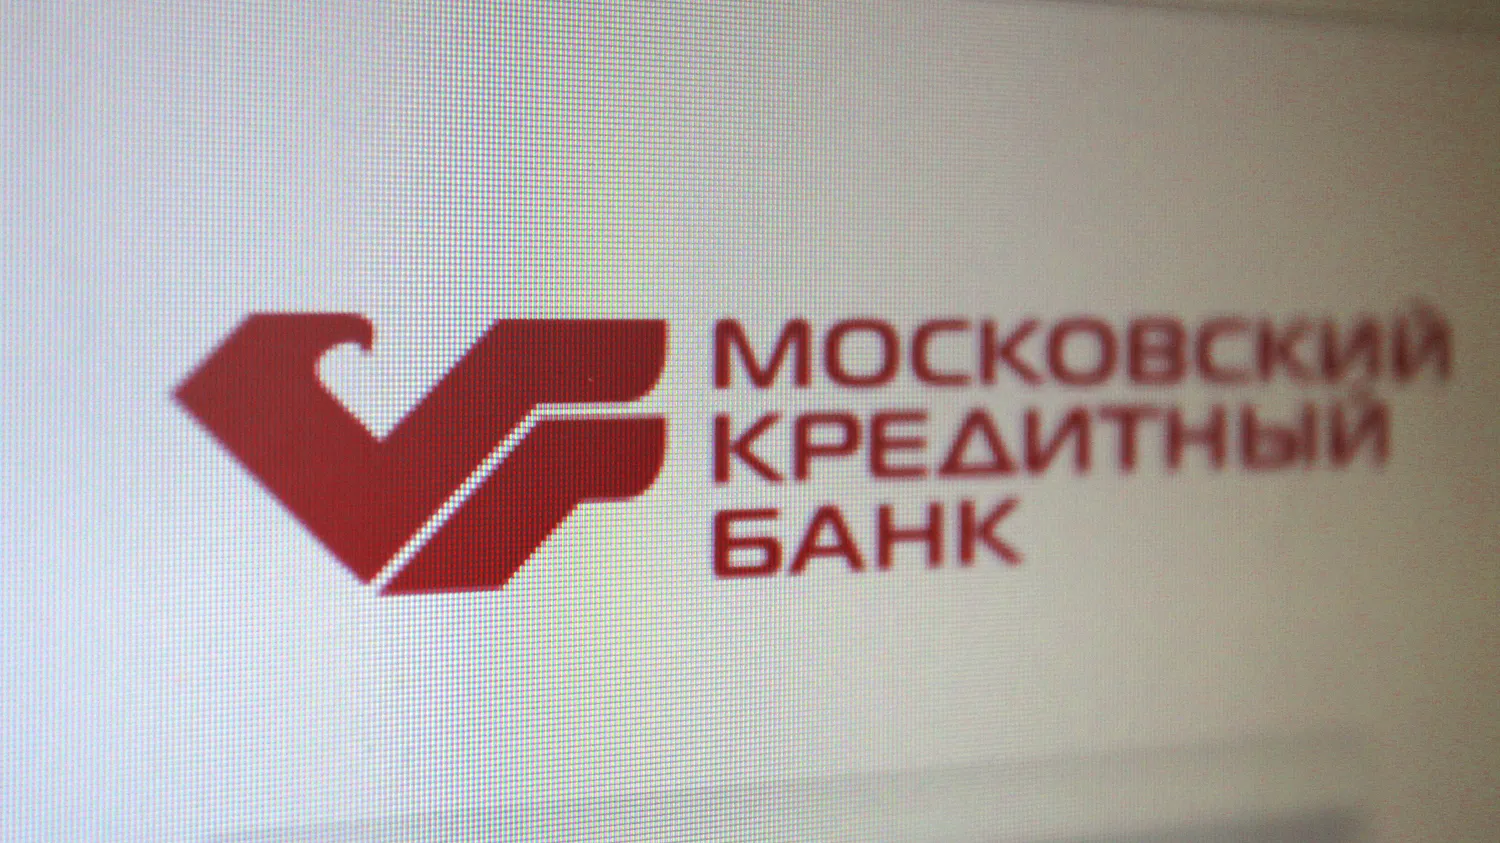 ЕБРР и IFC стали акционерами Московского кредитного банка